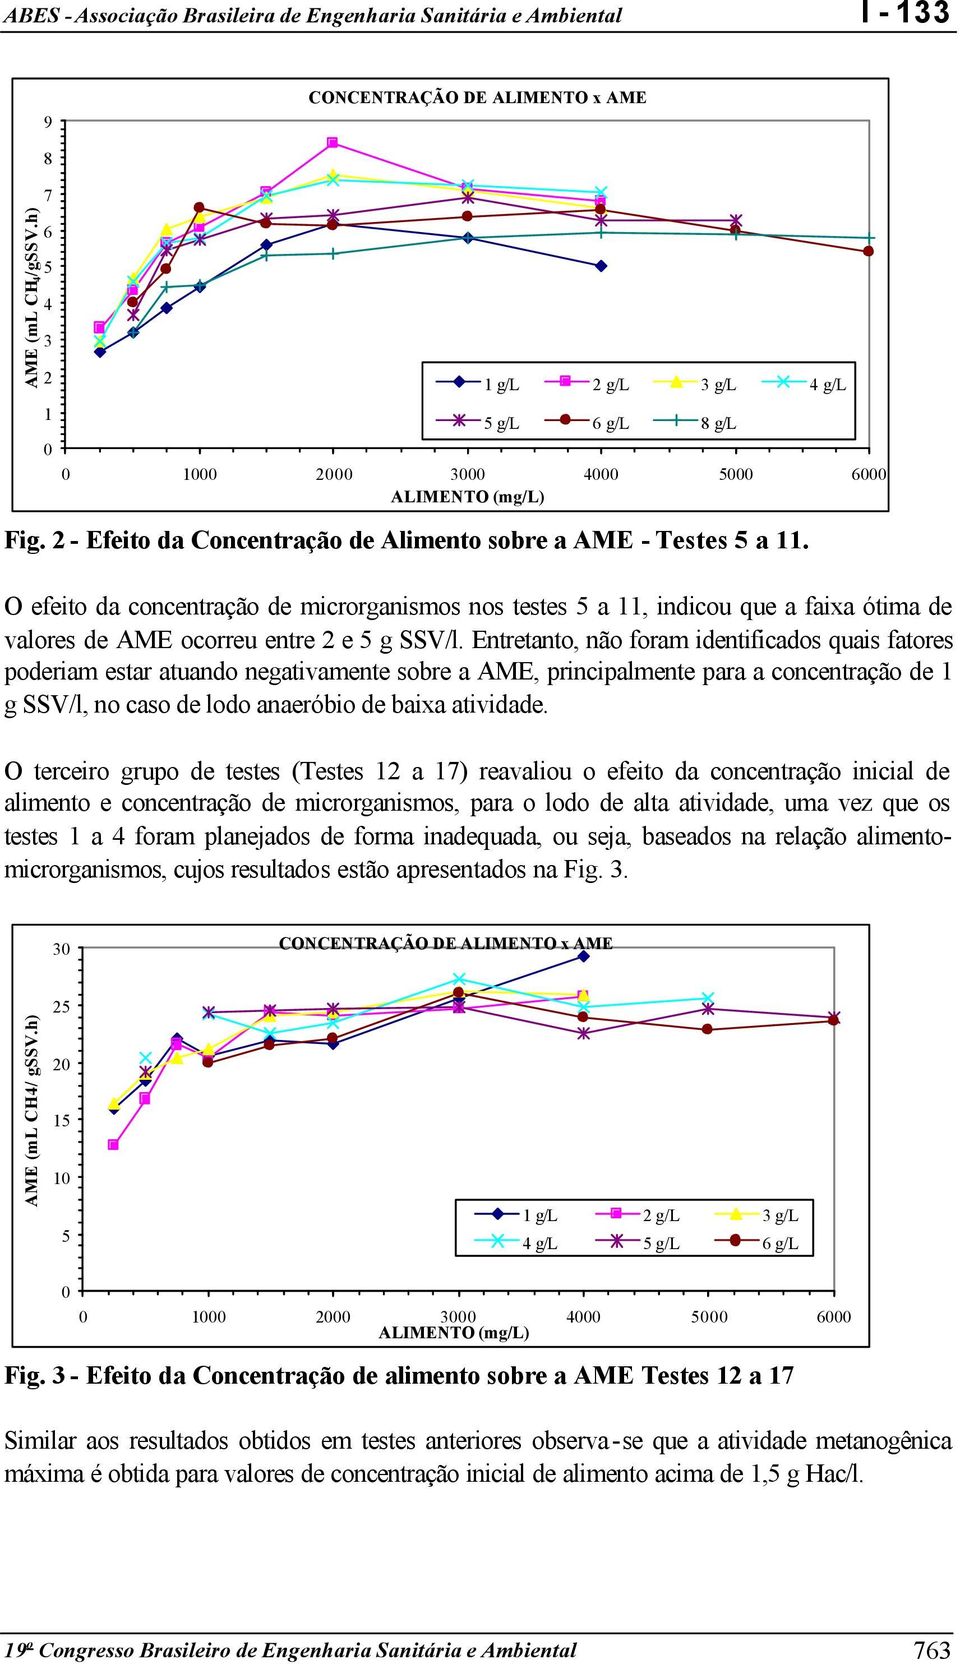 O efeito da concentração de microrganismos nos testes 5 a 11, indicou que a faixa ótima de valores de AME ocorreu entre 2 e 5 g SSV/l.